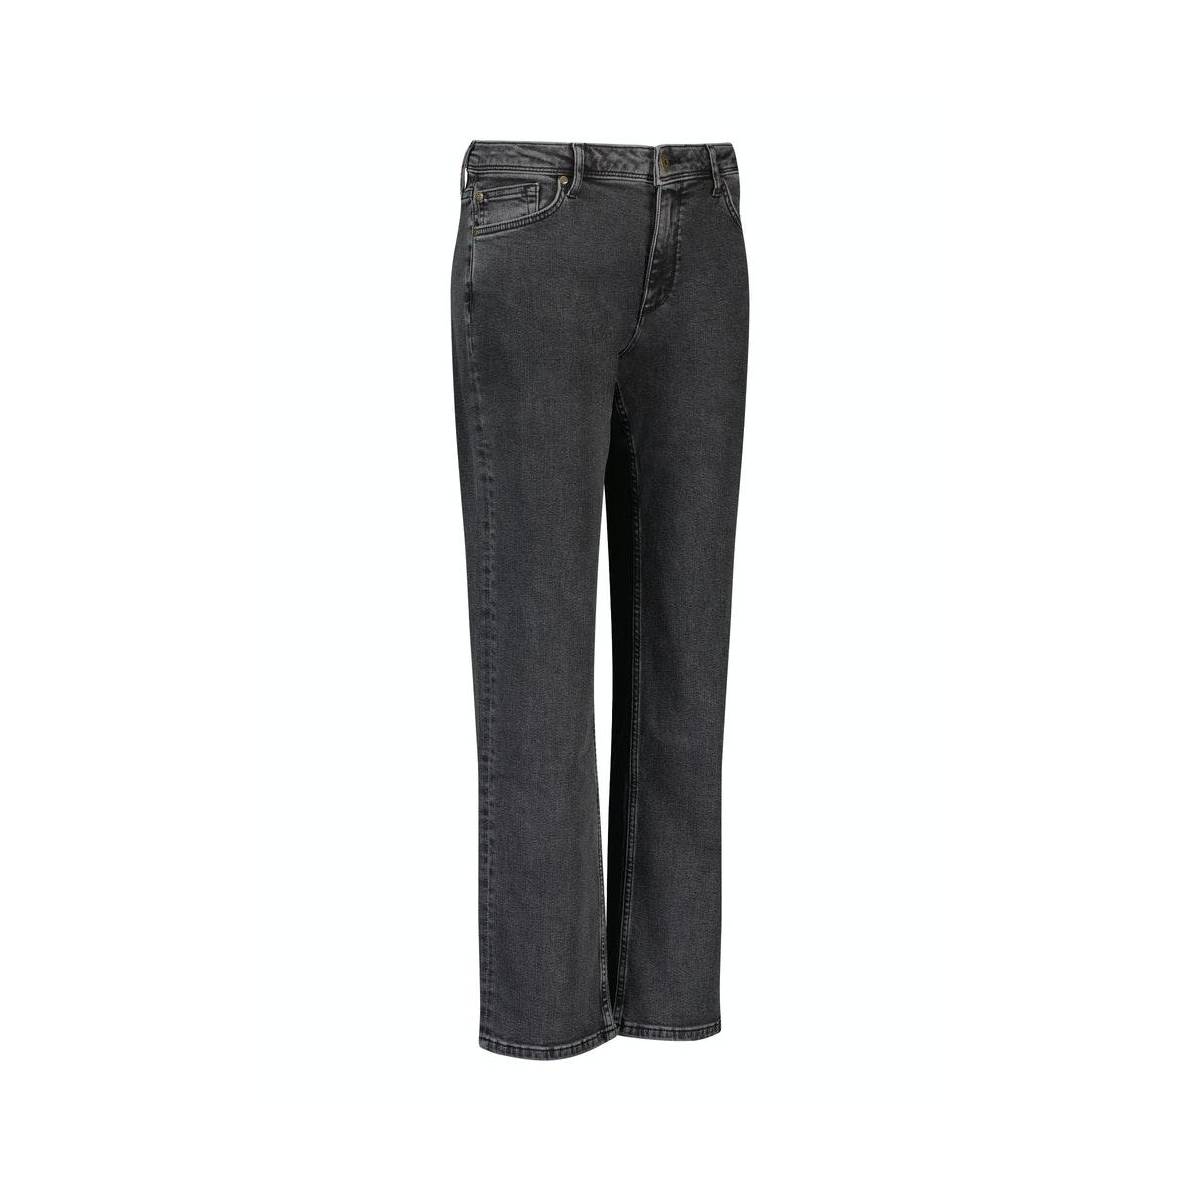 Studio Anneloes Britta black jeans trouser 06975 Zwart